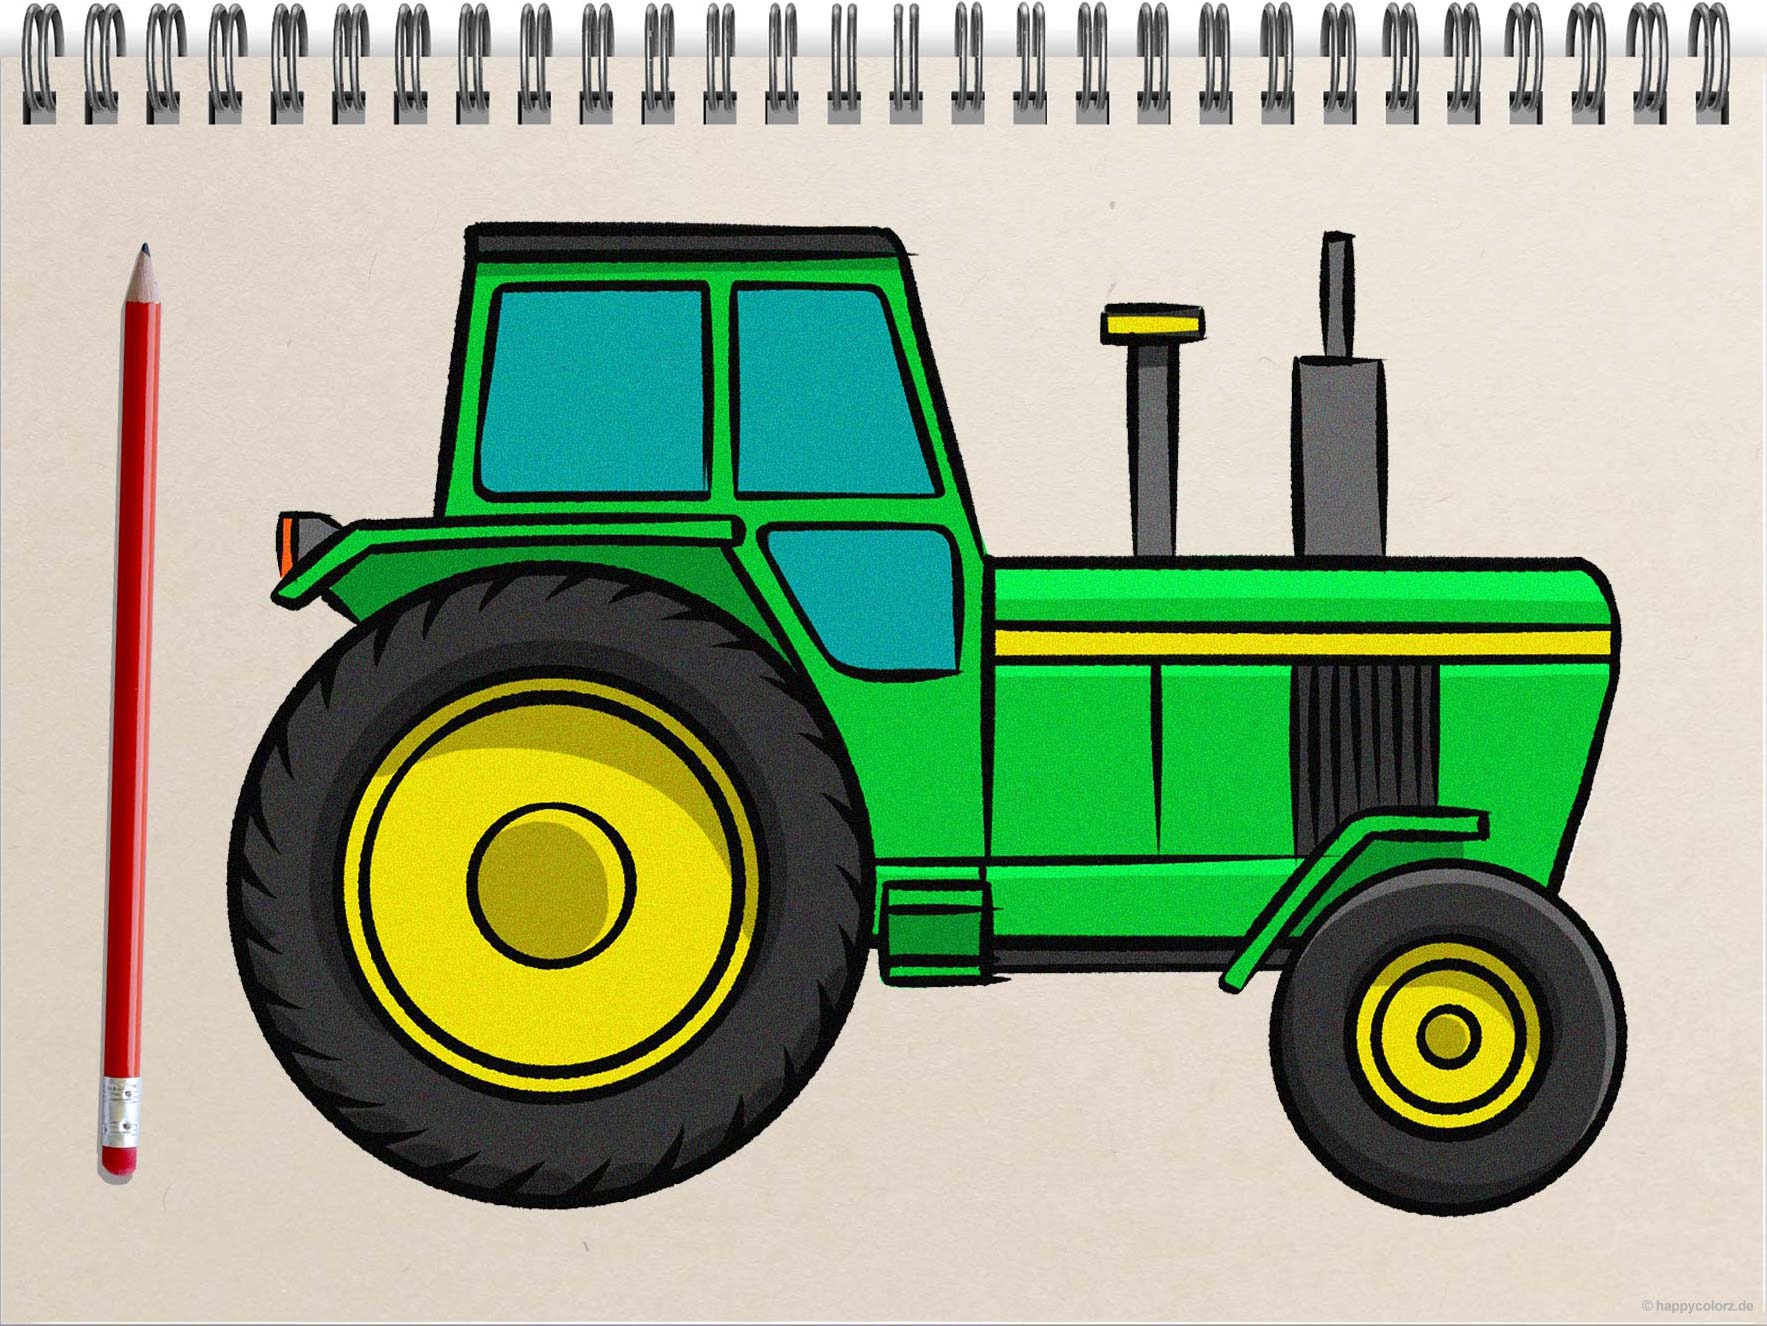 Traktor zeichnen - Schritt für Schritt